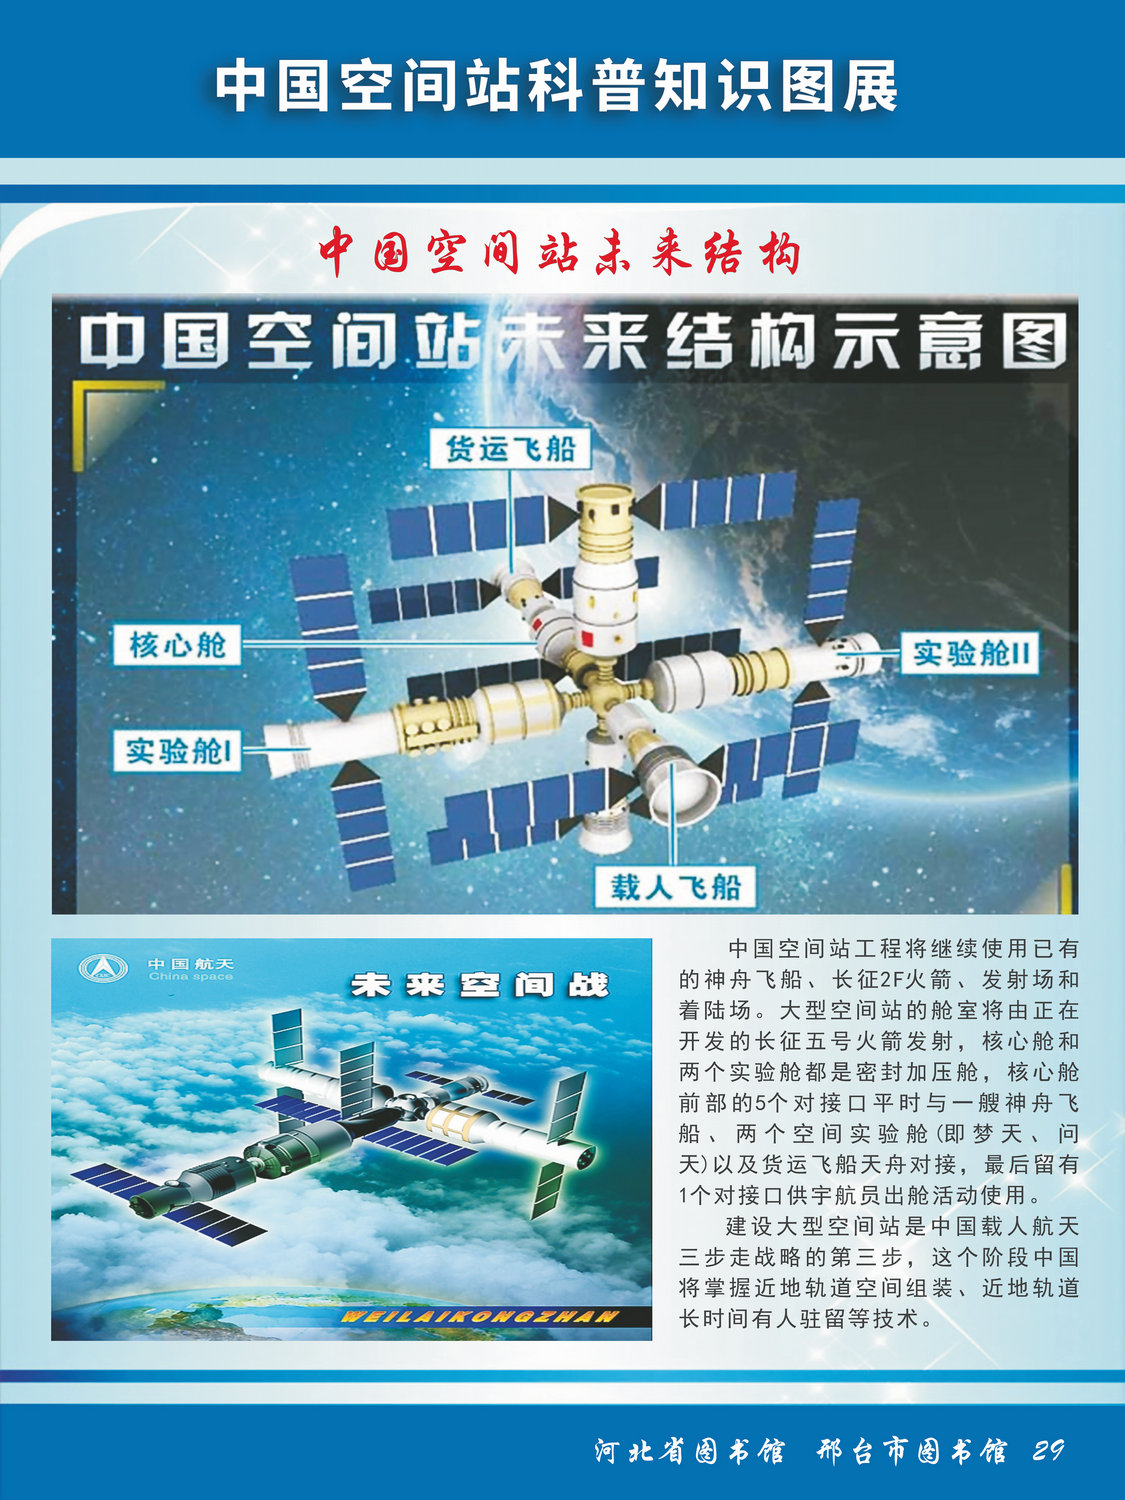 中国空间站科普知识图文展_图29